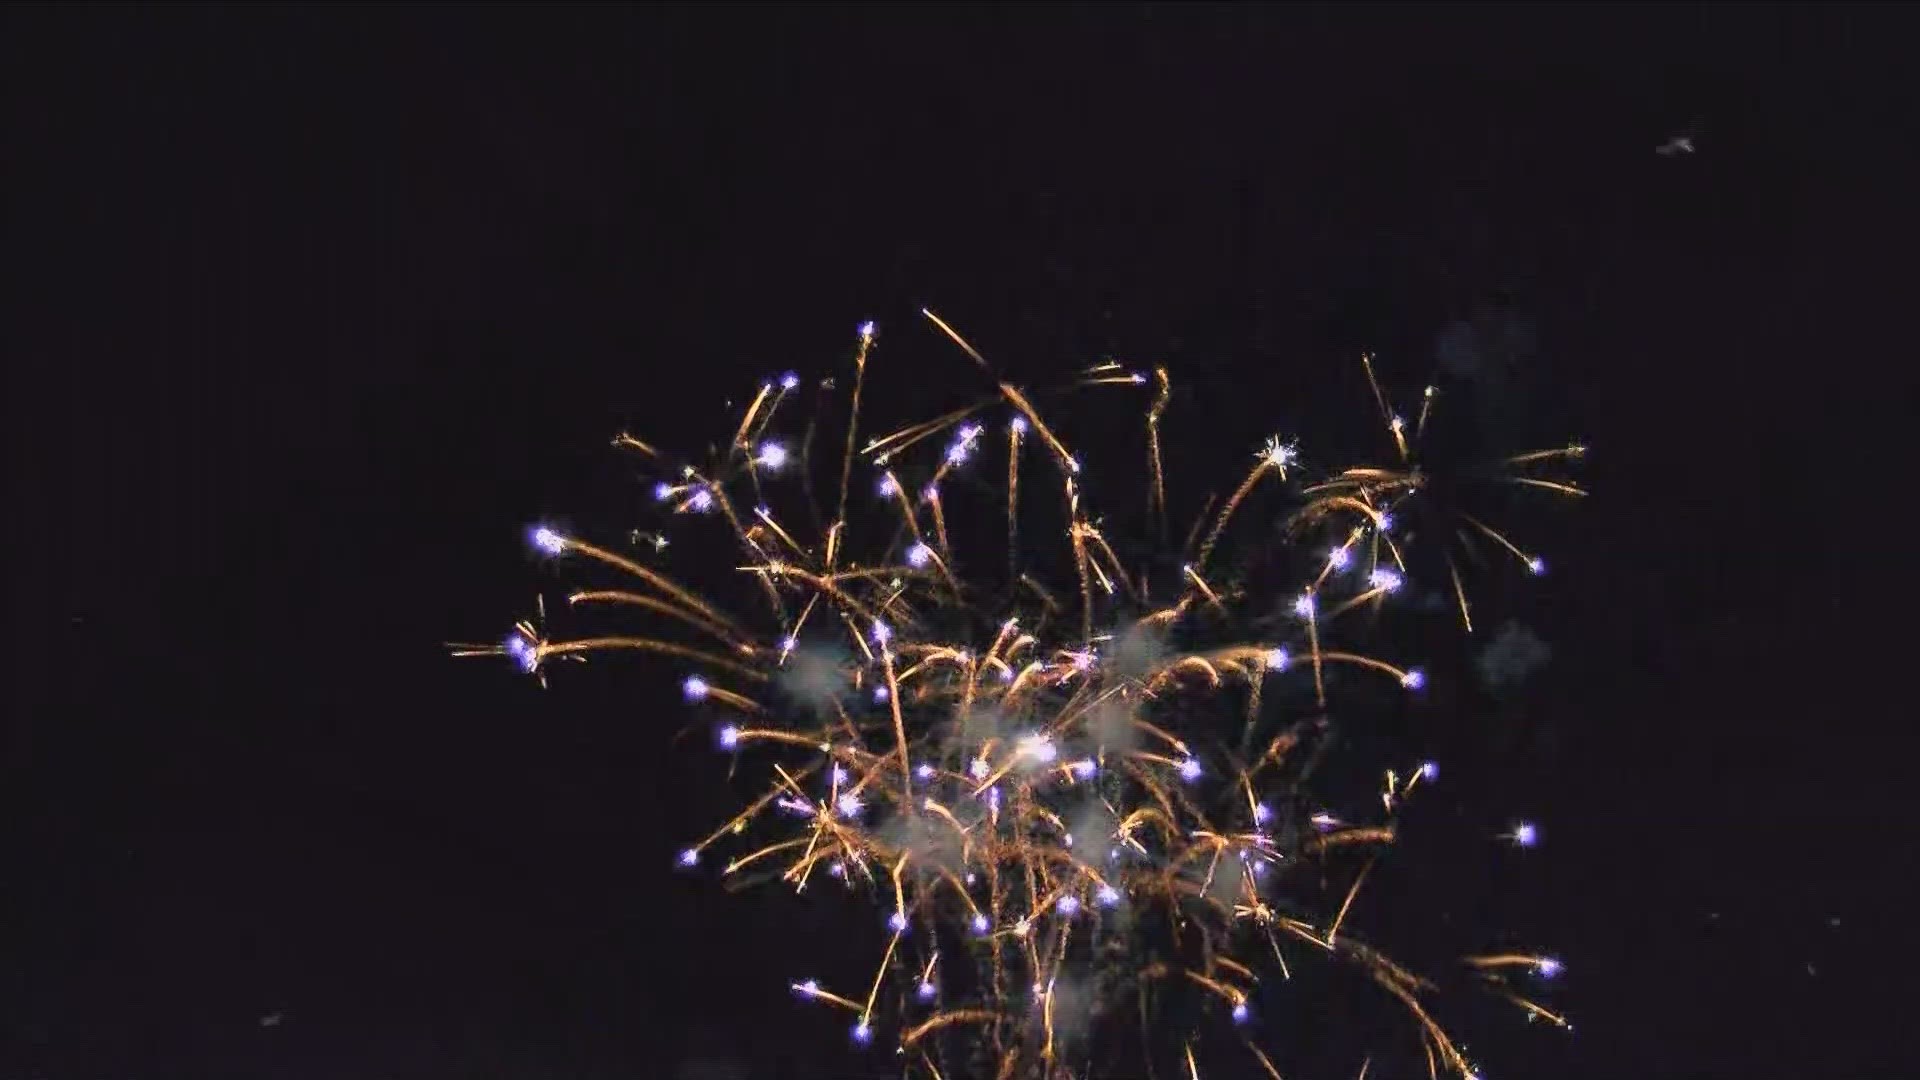 struktur kryds helt bestemt Perrysburg -Maumee fireworks at Orleans park | wtol.com